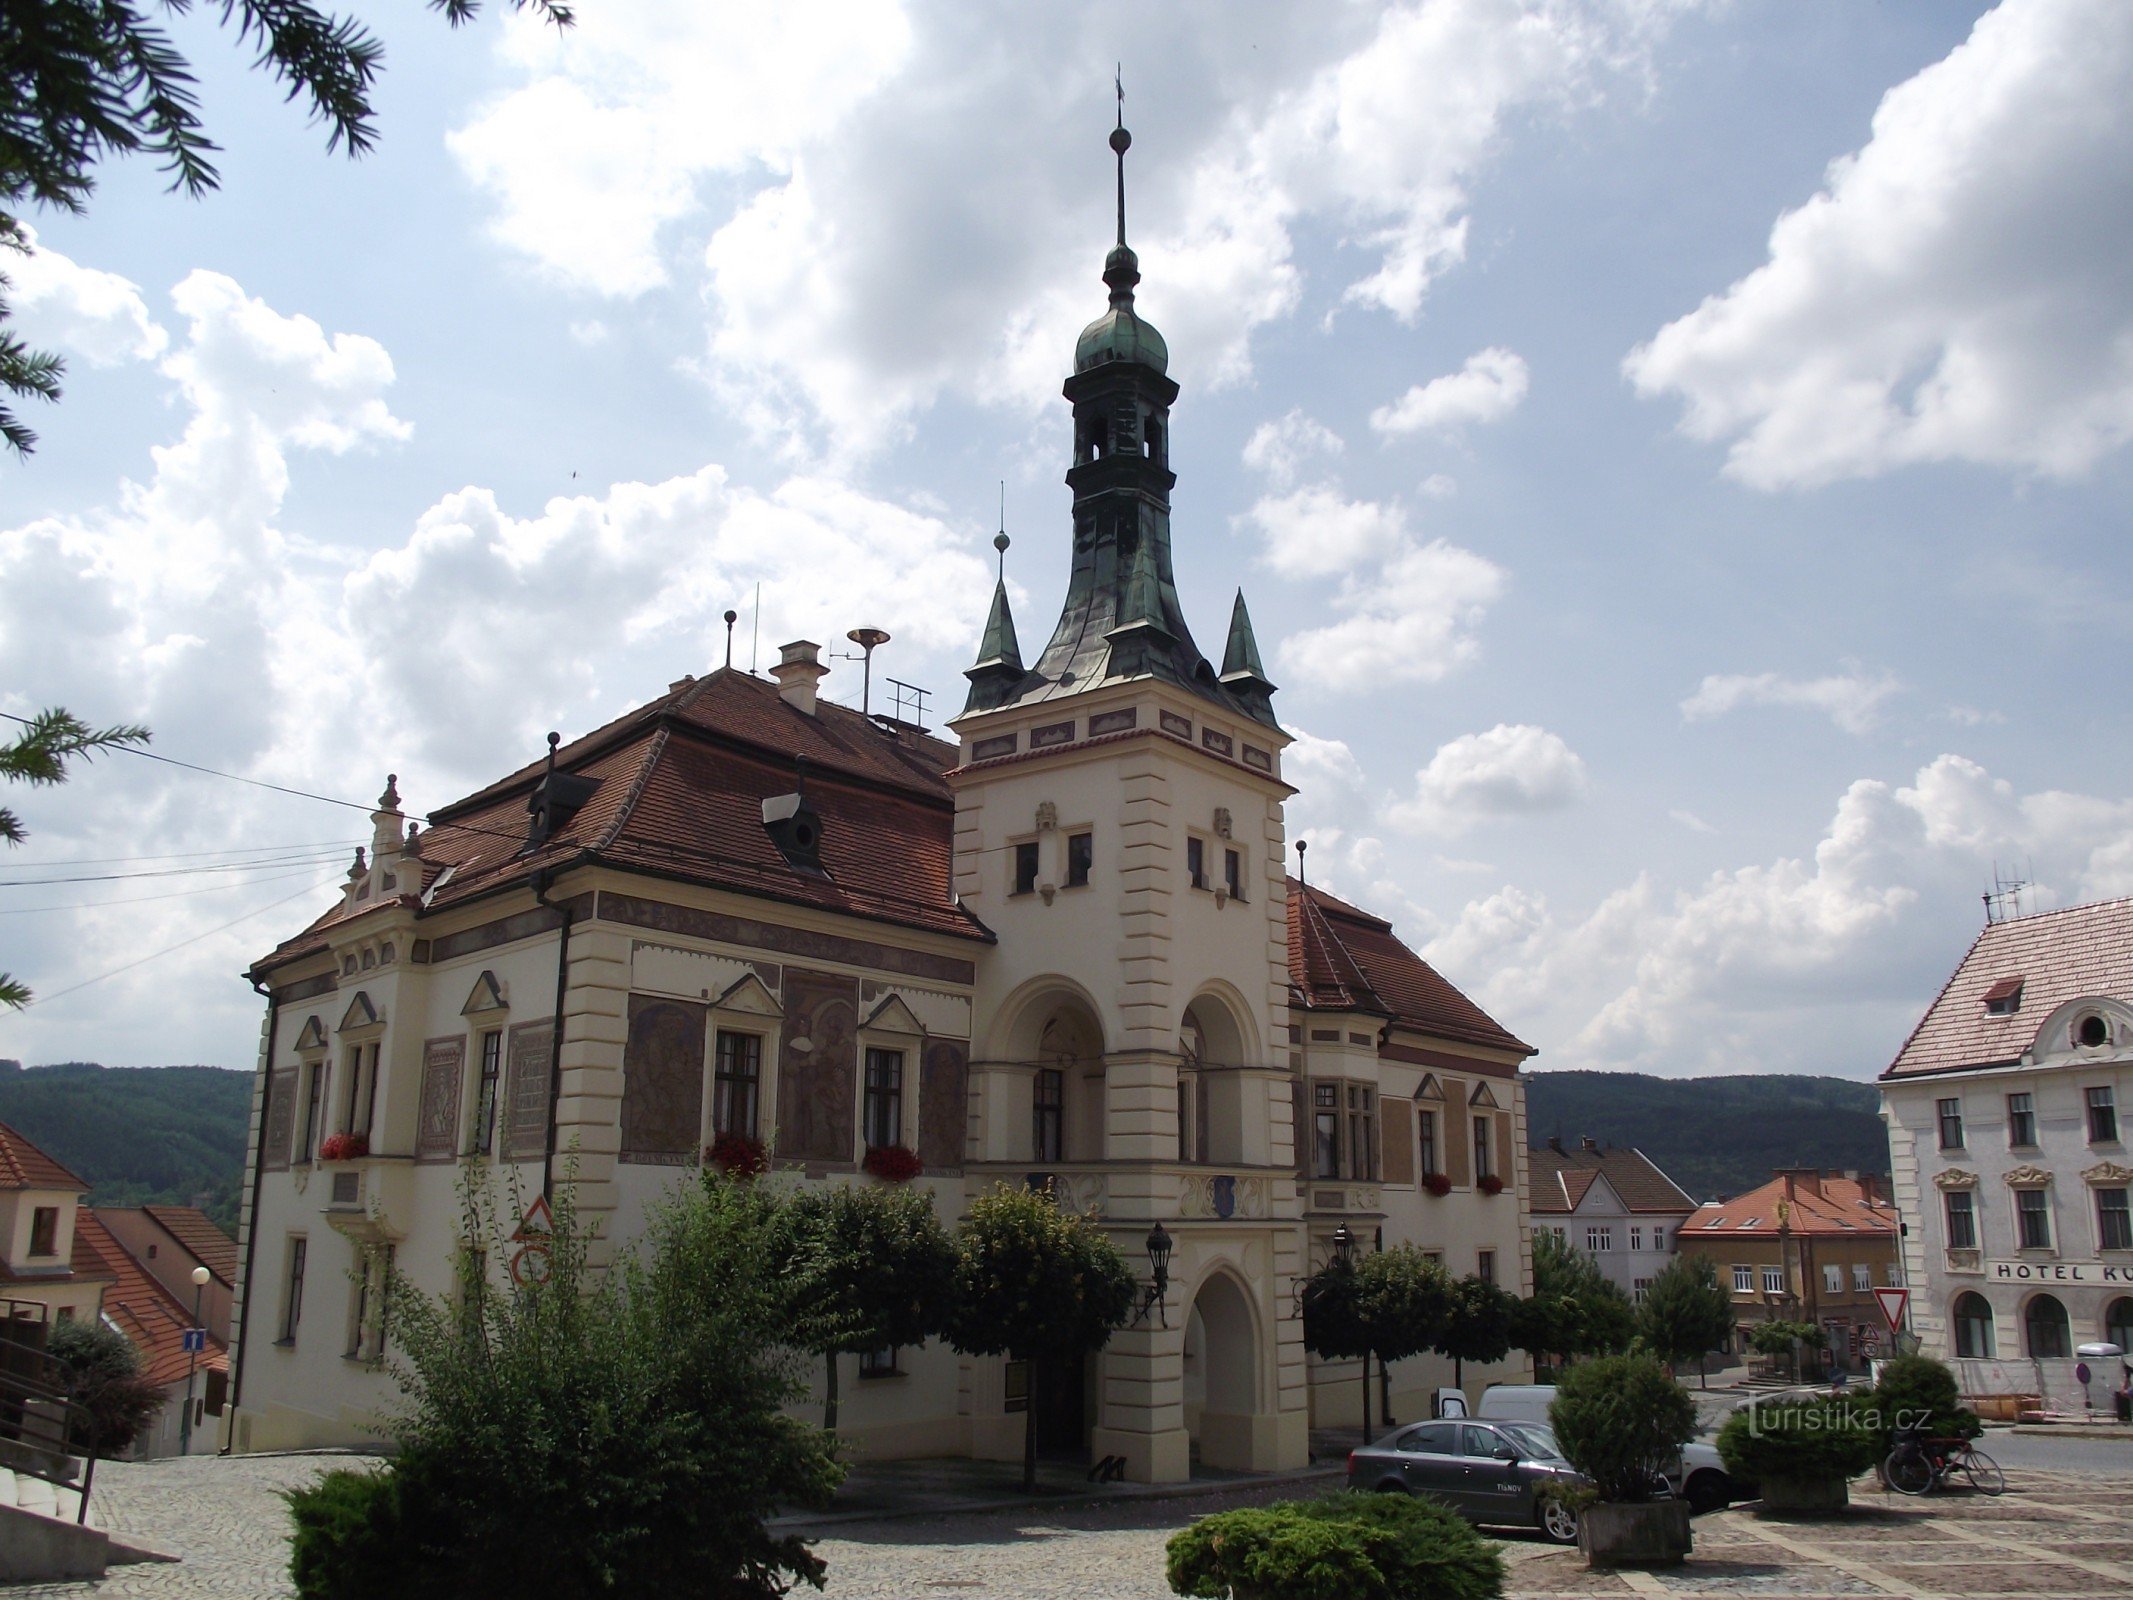 ティシュノフ – 新ルネッサンス様式の市庁舎